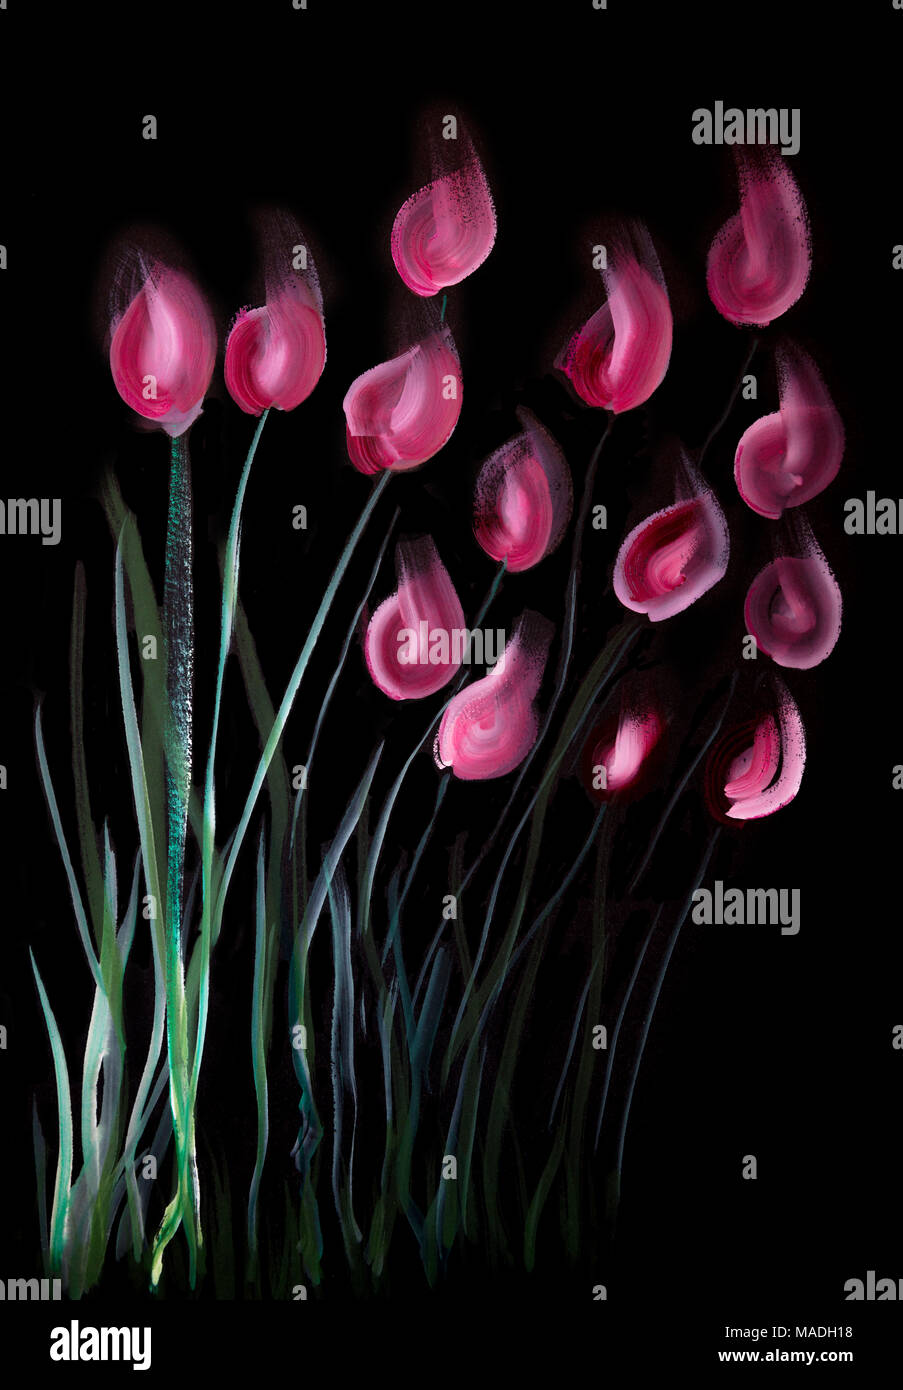 L'un trait rouge et de tulipes roses sur fond noir. La technique du badigeonnage près des bords donne un effet de flou dû à la surface altérée r Banque D'Images